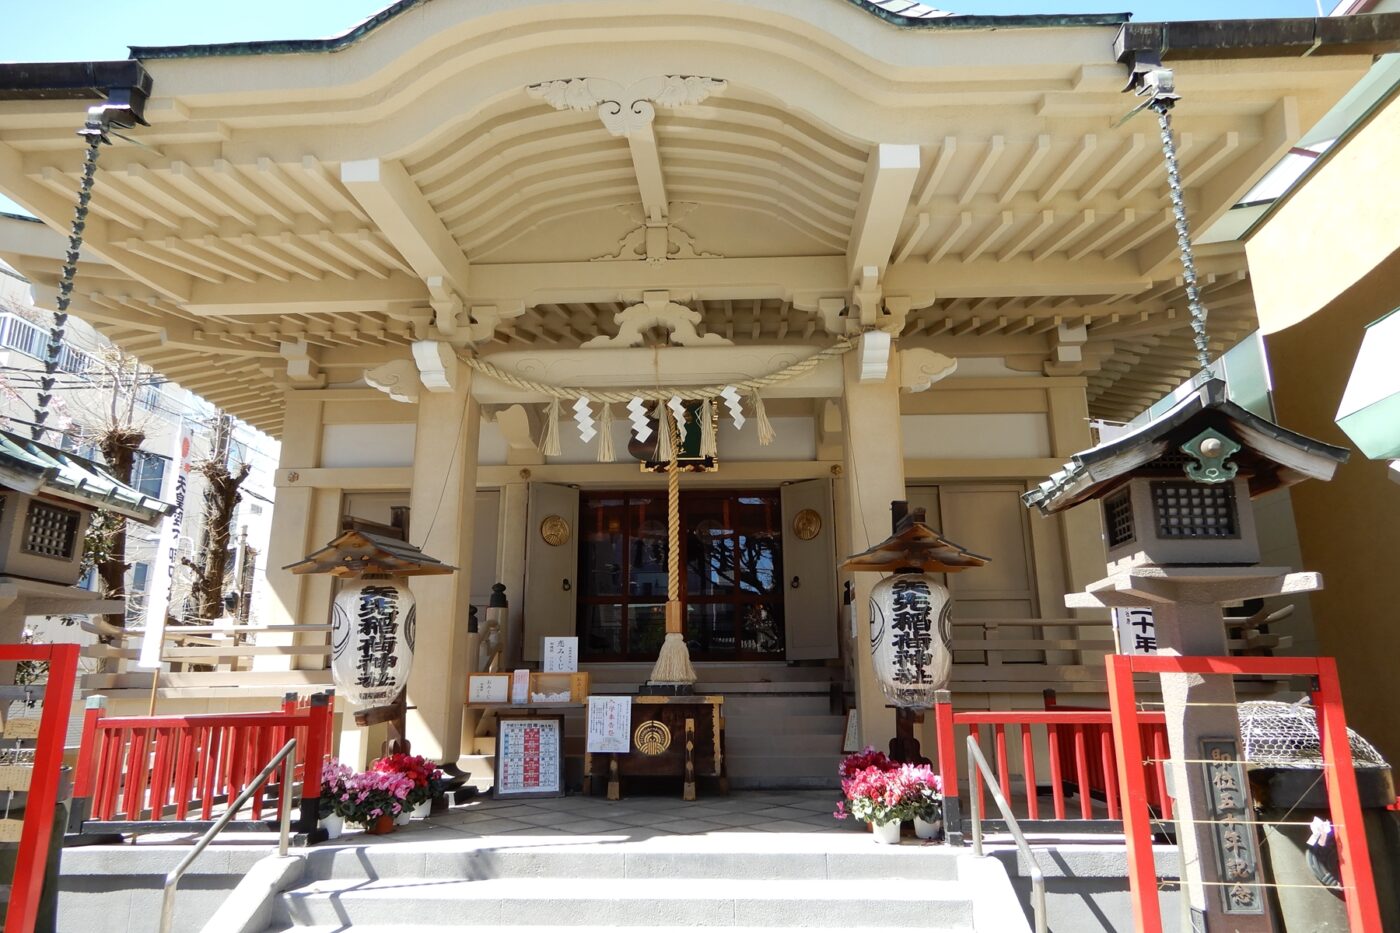 矢先稲荷神社の写真